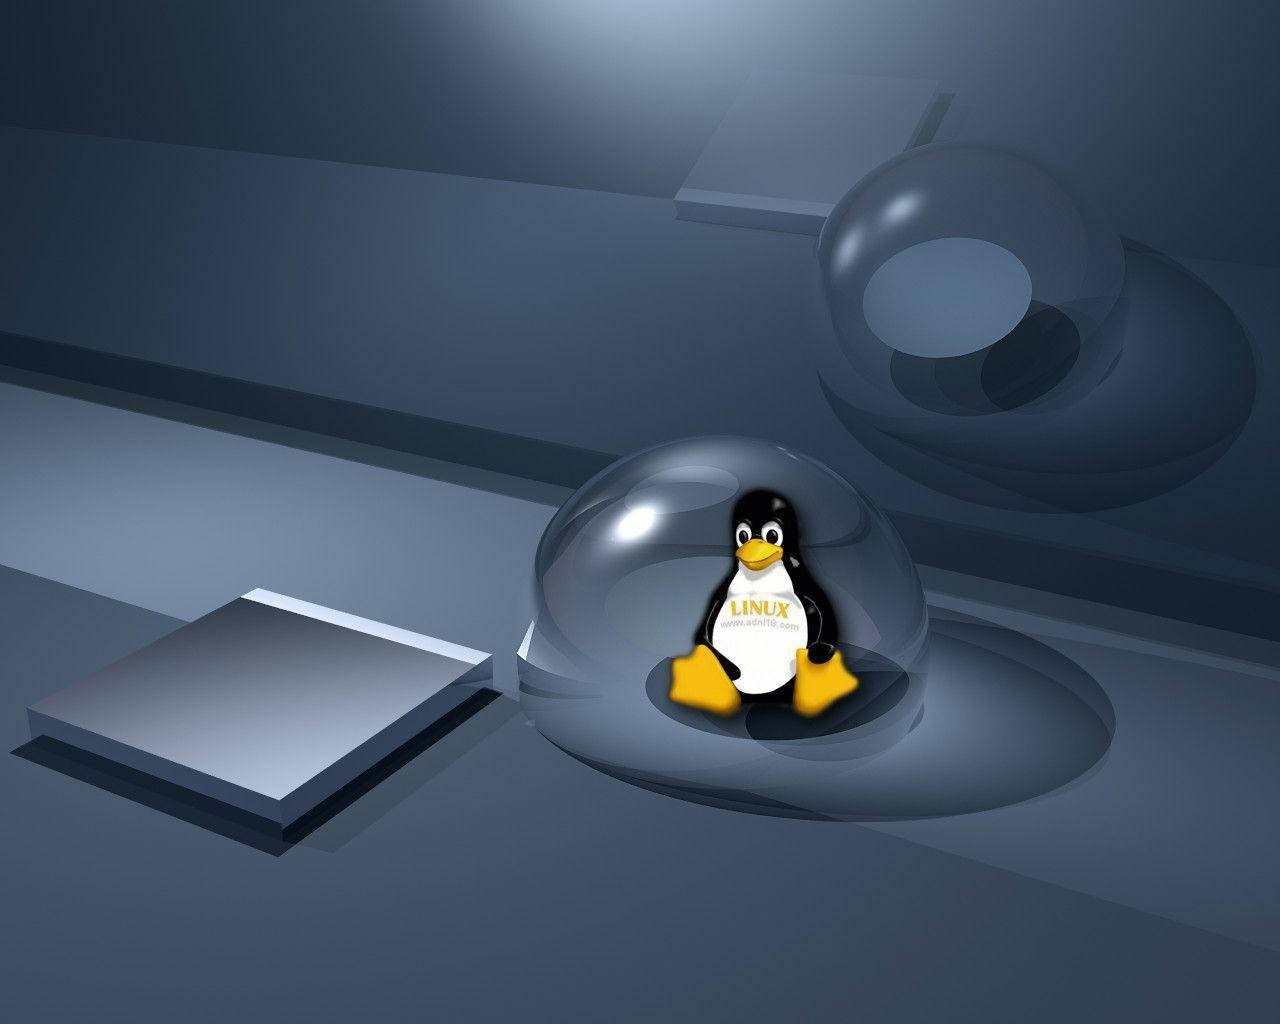 Tuxdentro De Uma Bolha - Design Digital De Desktop Linux. Papel de Parede